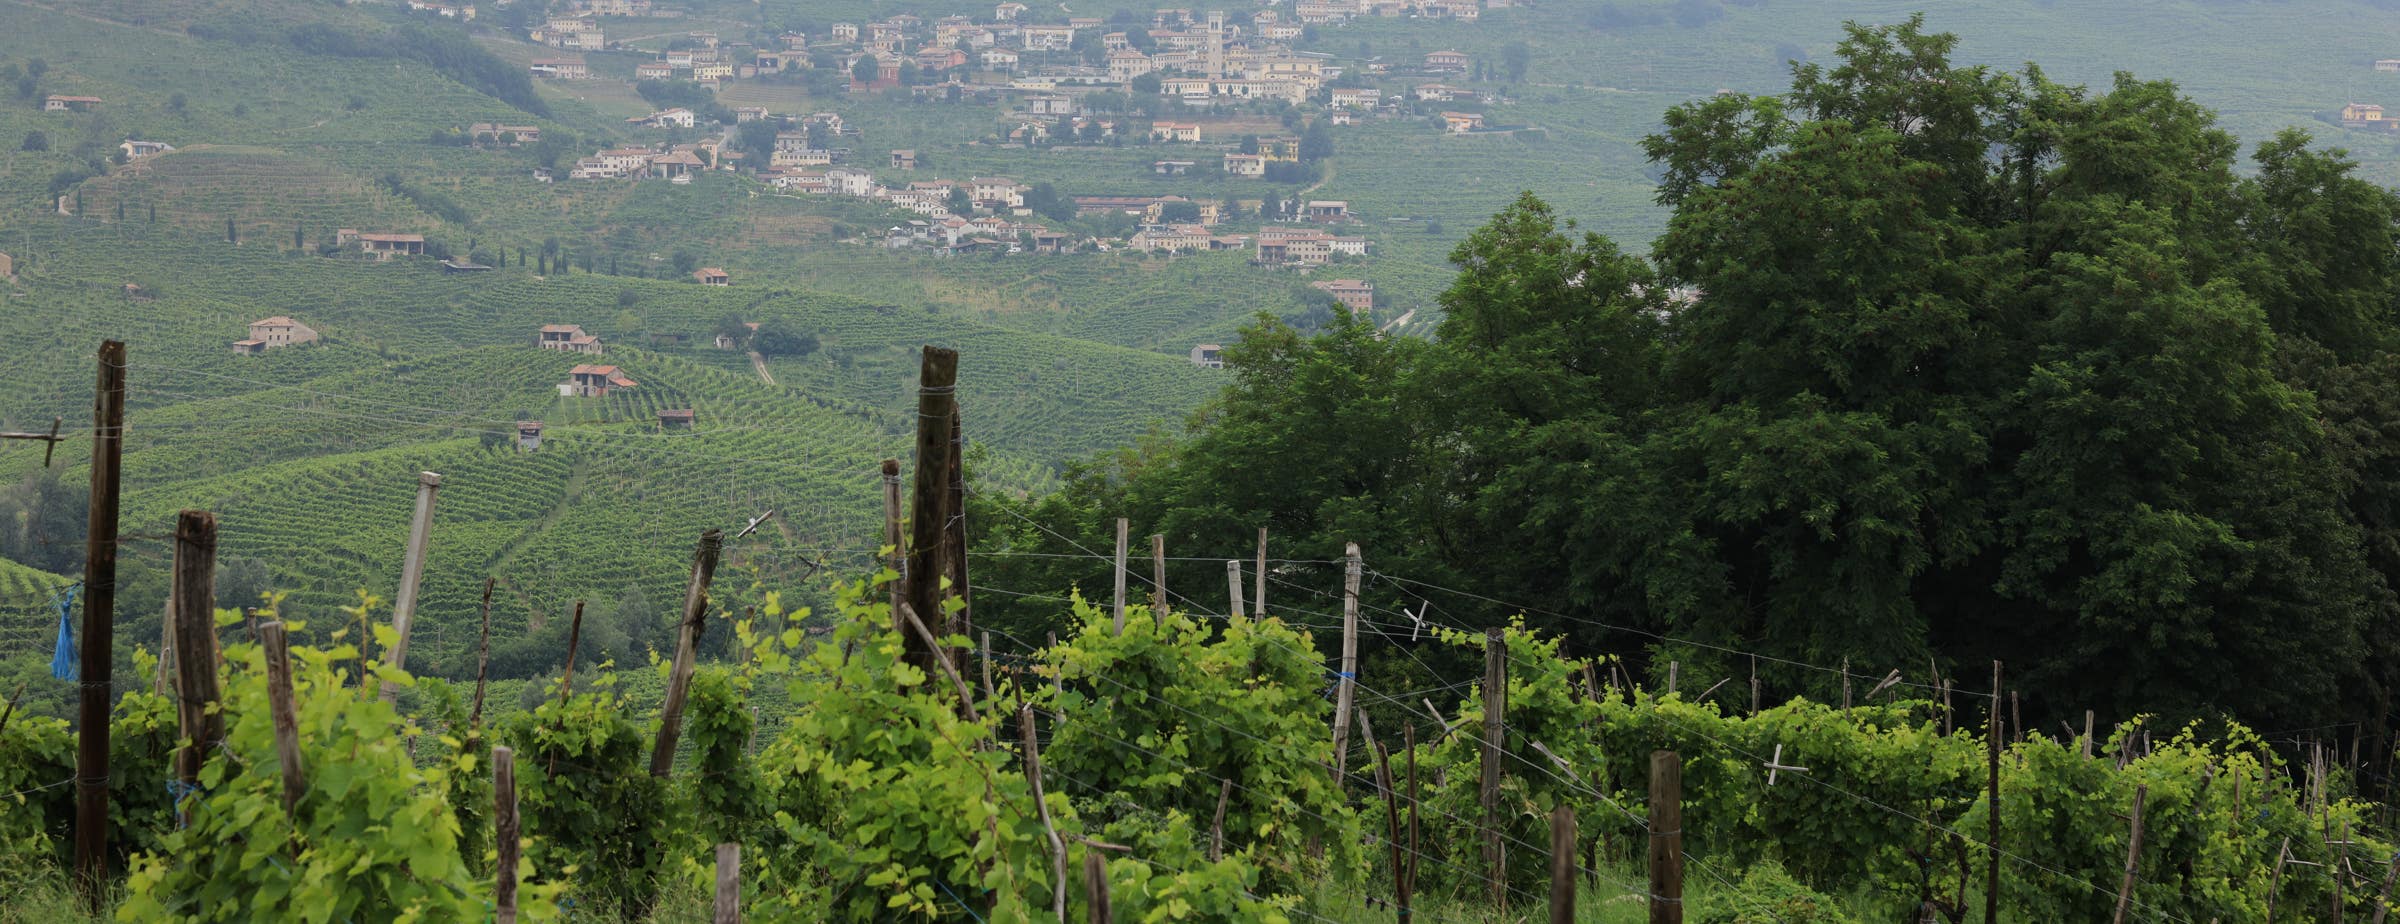 Pogled iz vinograda koji pokazuje bliske vinove loze ispred i više vinograda i malo selo u daljini.